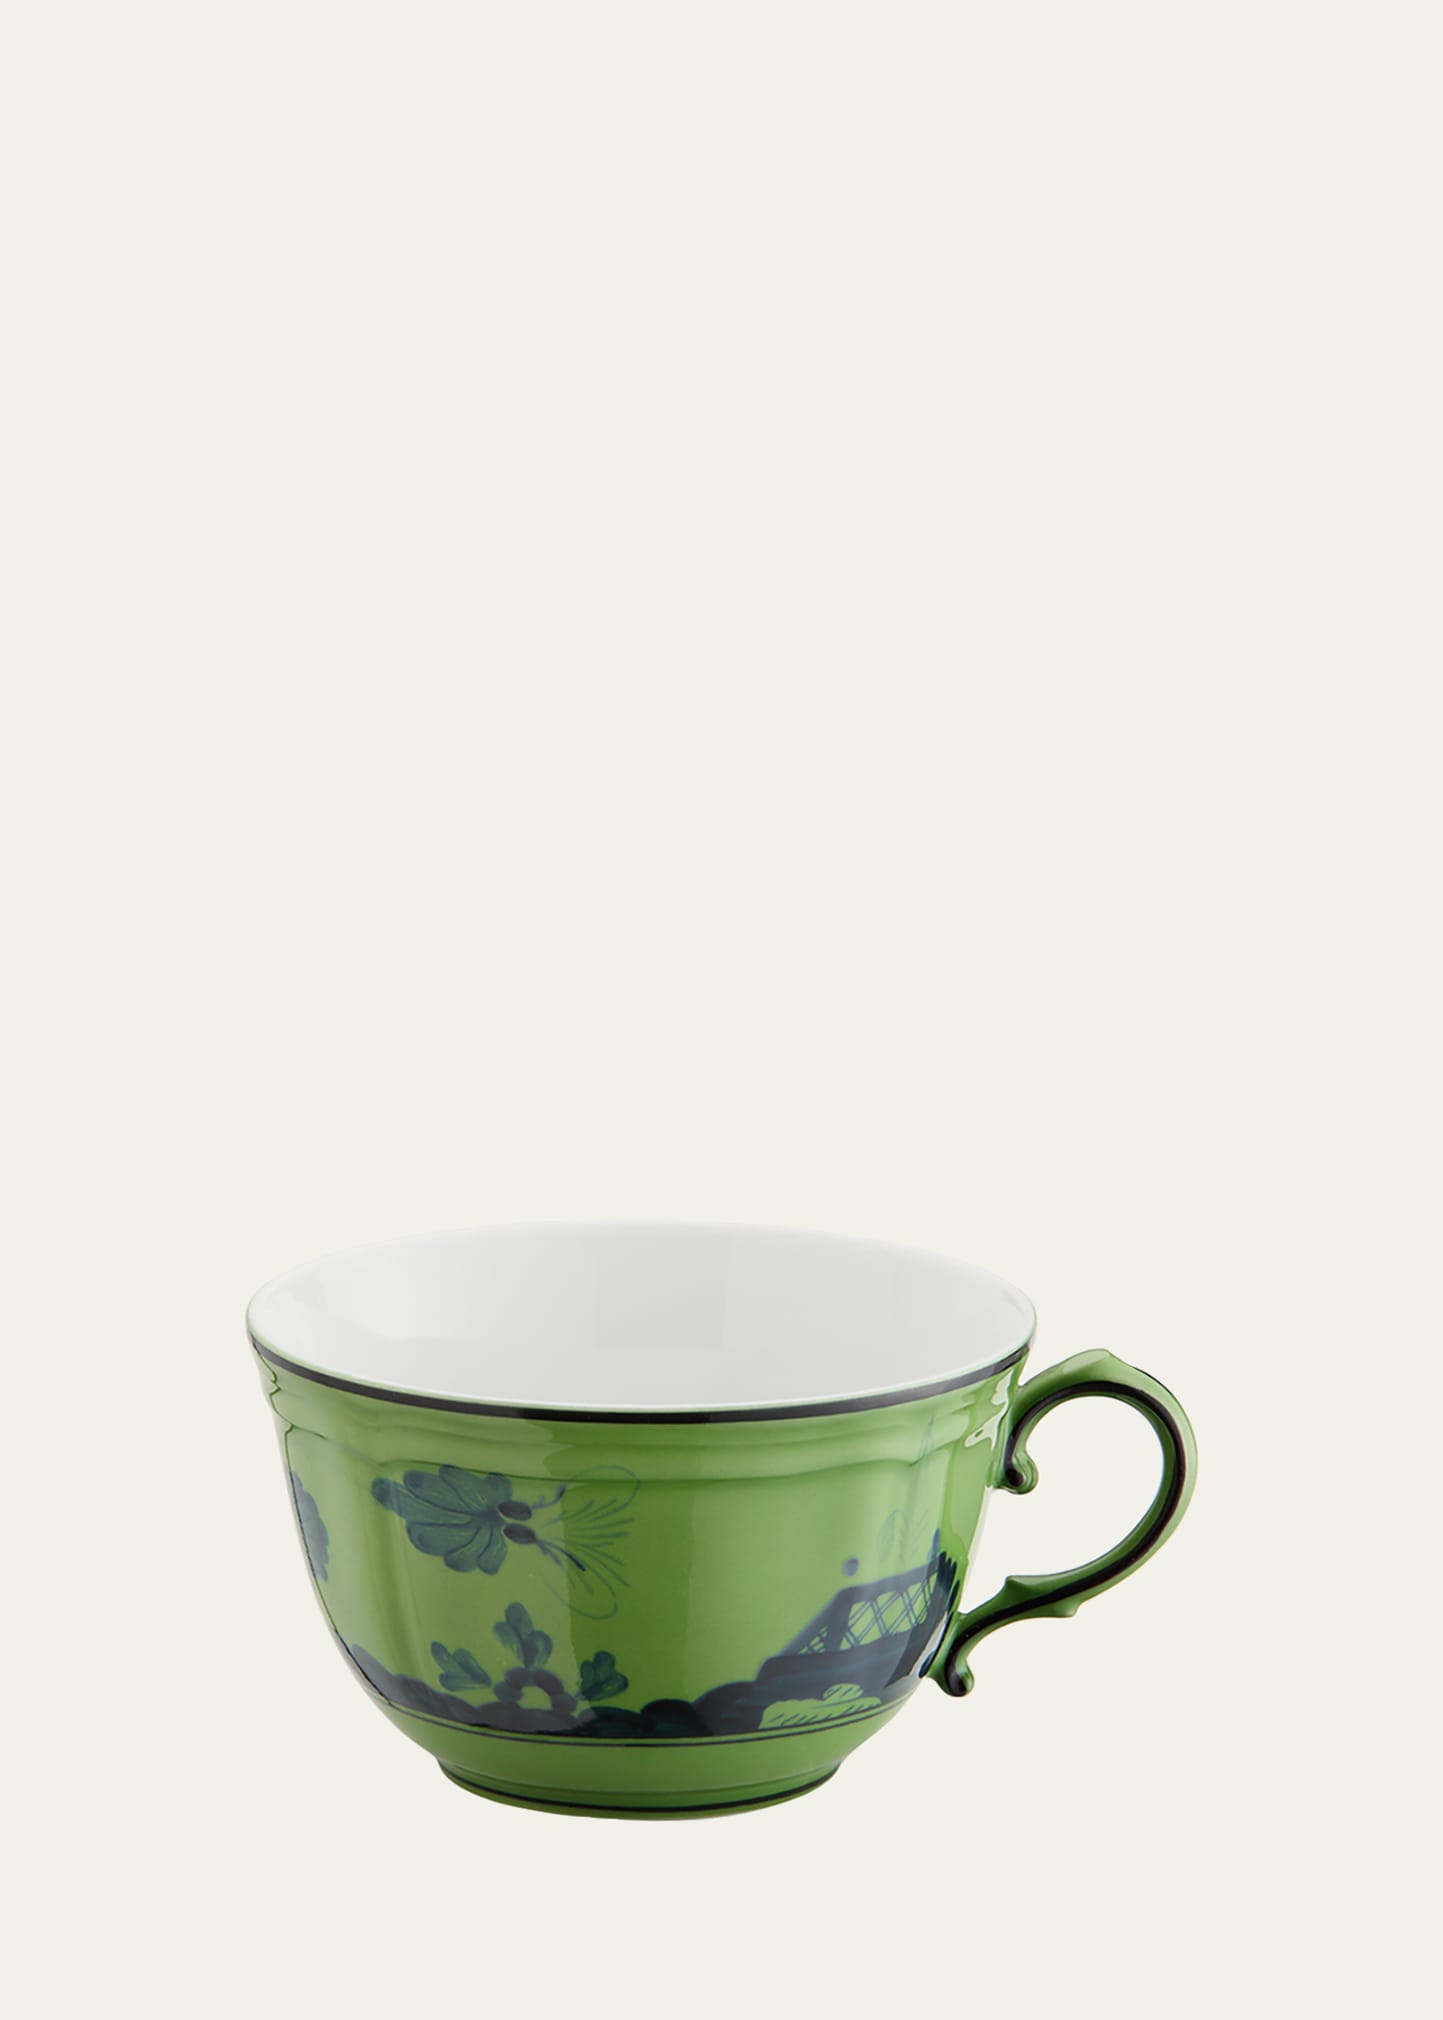 Ginori 1735 Oriente Italiano Tea Cup, Malachite In Green